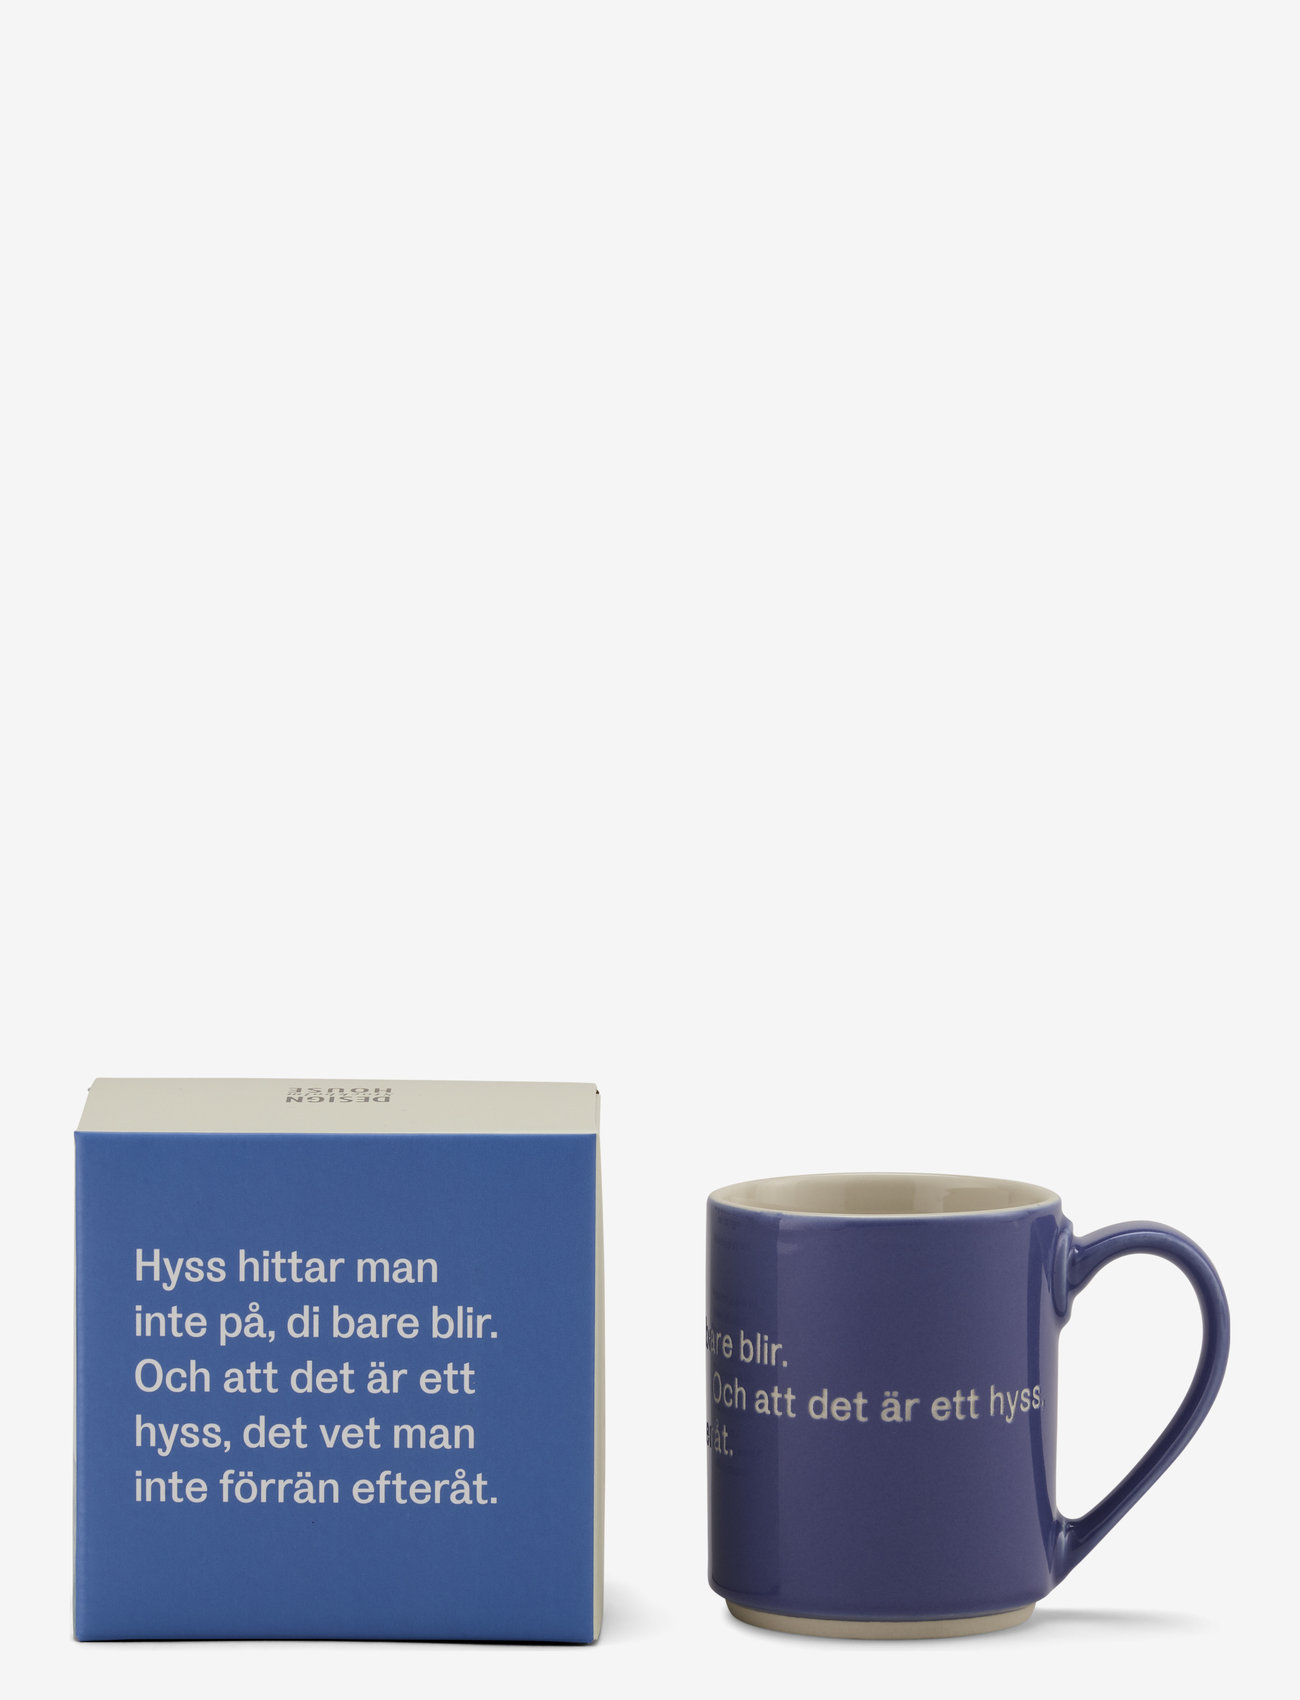 Design House Stockholm - Astrid  Lindgren mug - lowest prices - blue - 0